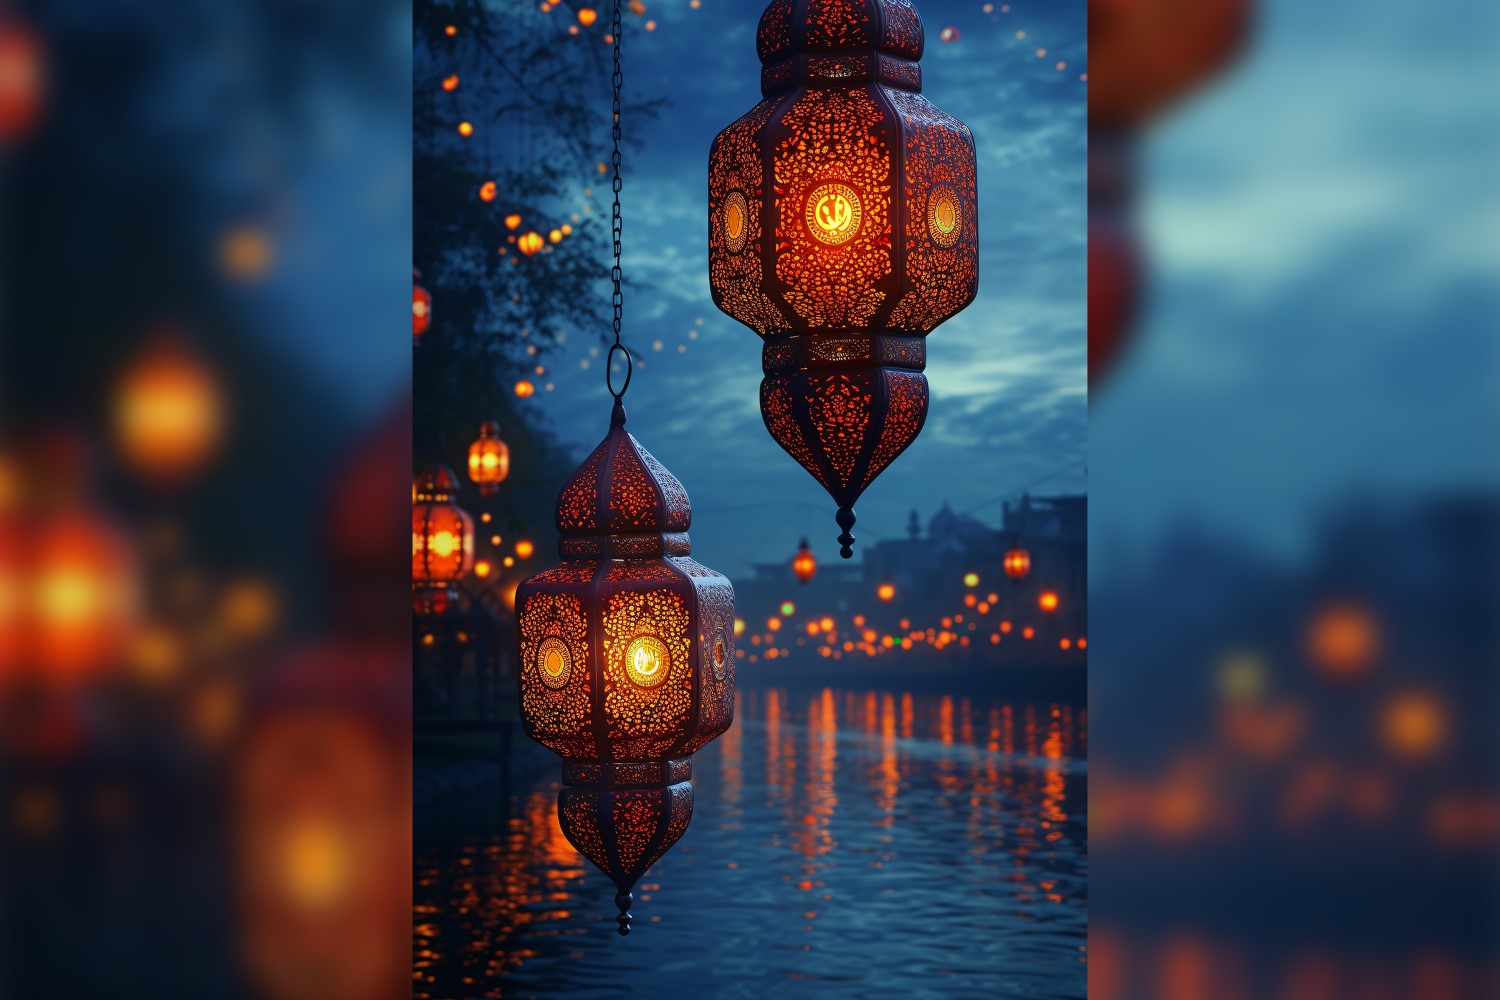 Ramadan Kareem greeting card poster design with lantern 01